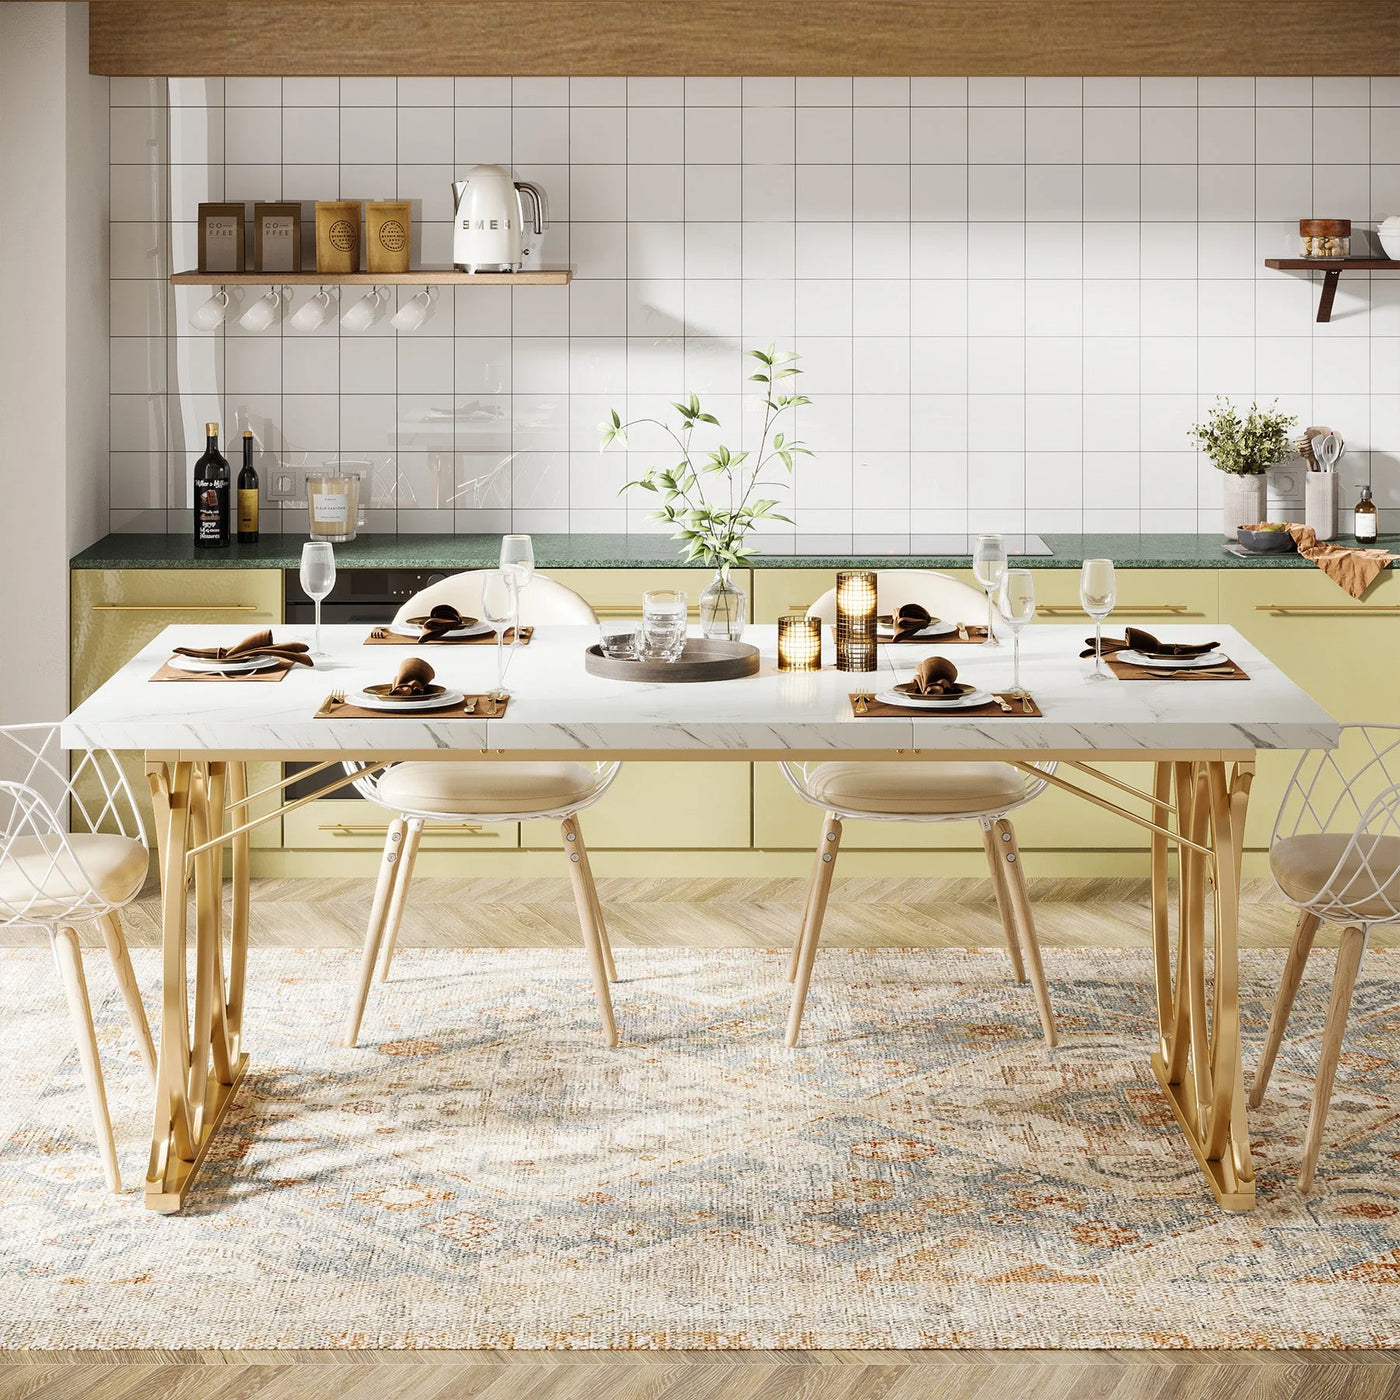 طاولة طعام حديثة مقاس 63 بوصة من Verre مع سطح من الخشب البني تتسع لـ 4-6 أشخاص لطاولة عشاء المطبخ